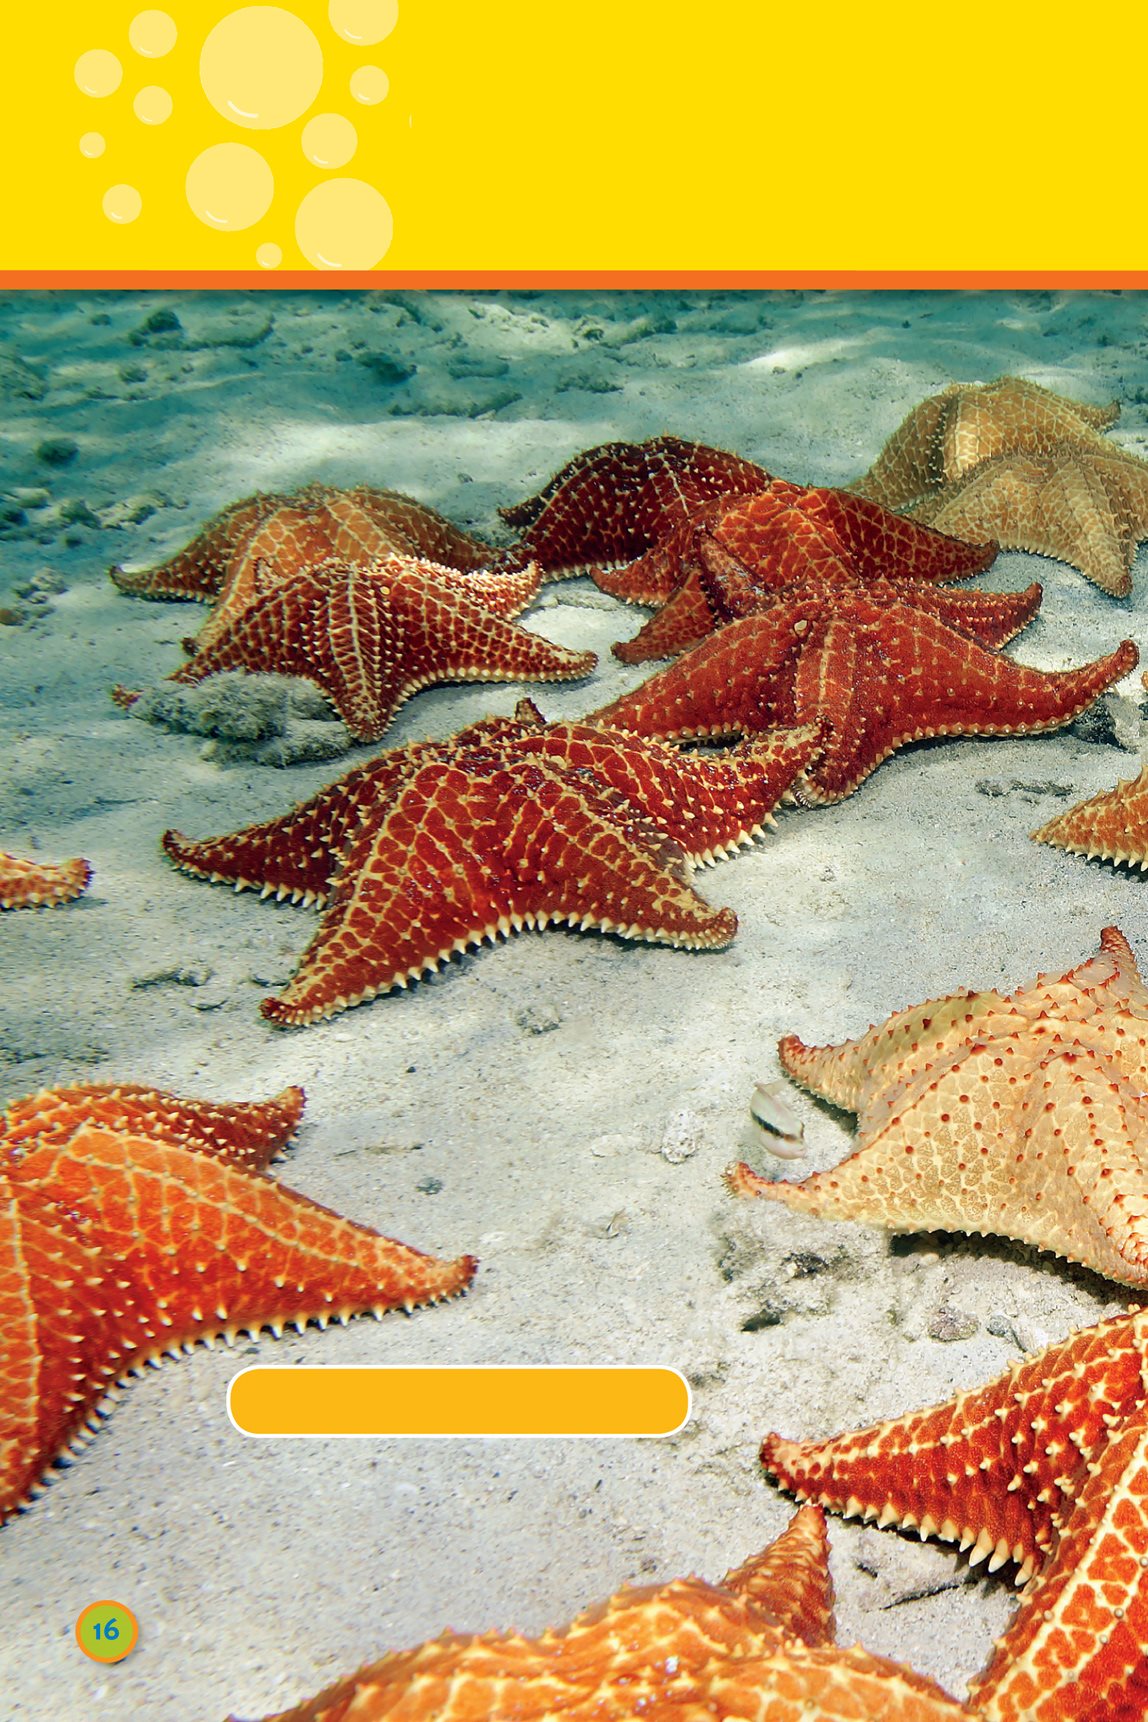 Some animals here cushion sea stars swim very very slowly - photo 18